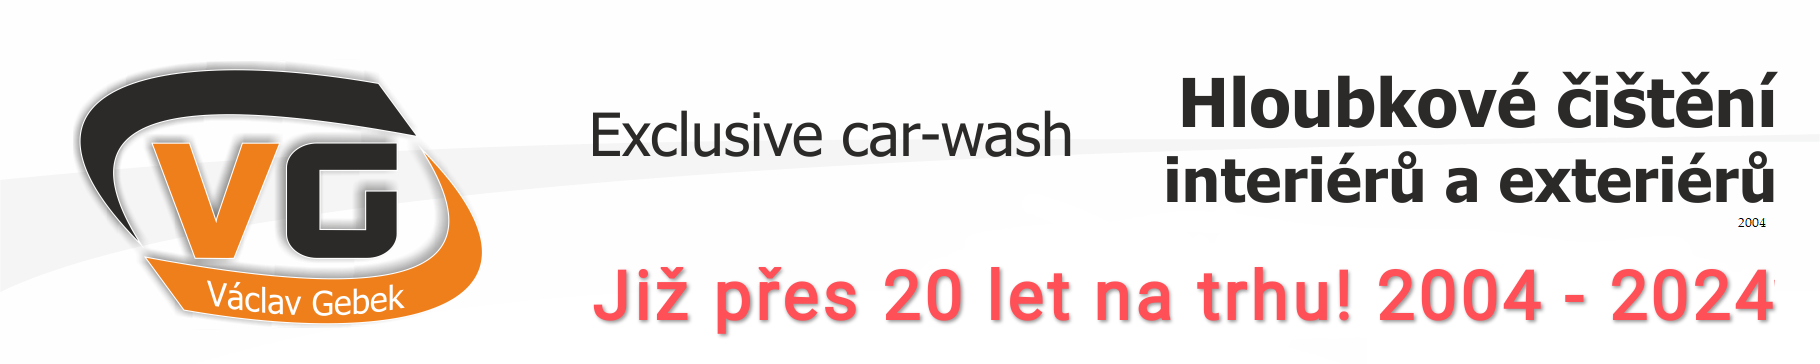 CAR-WASH exclusive